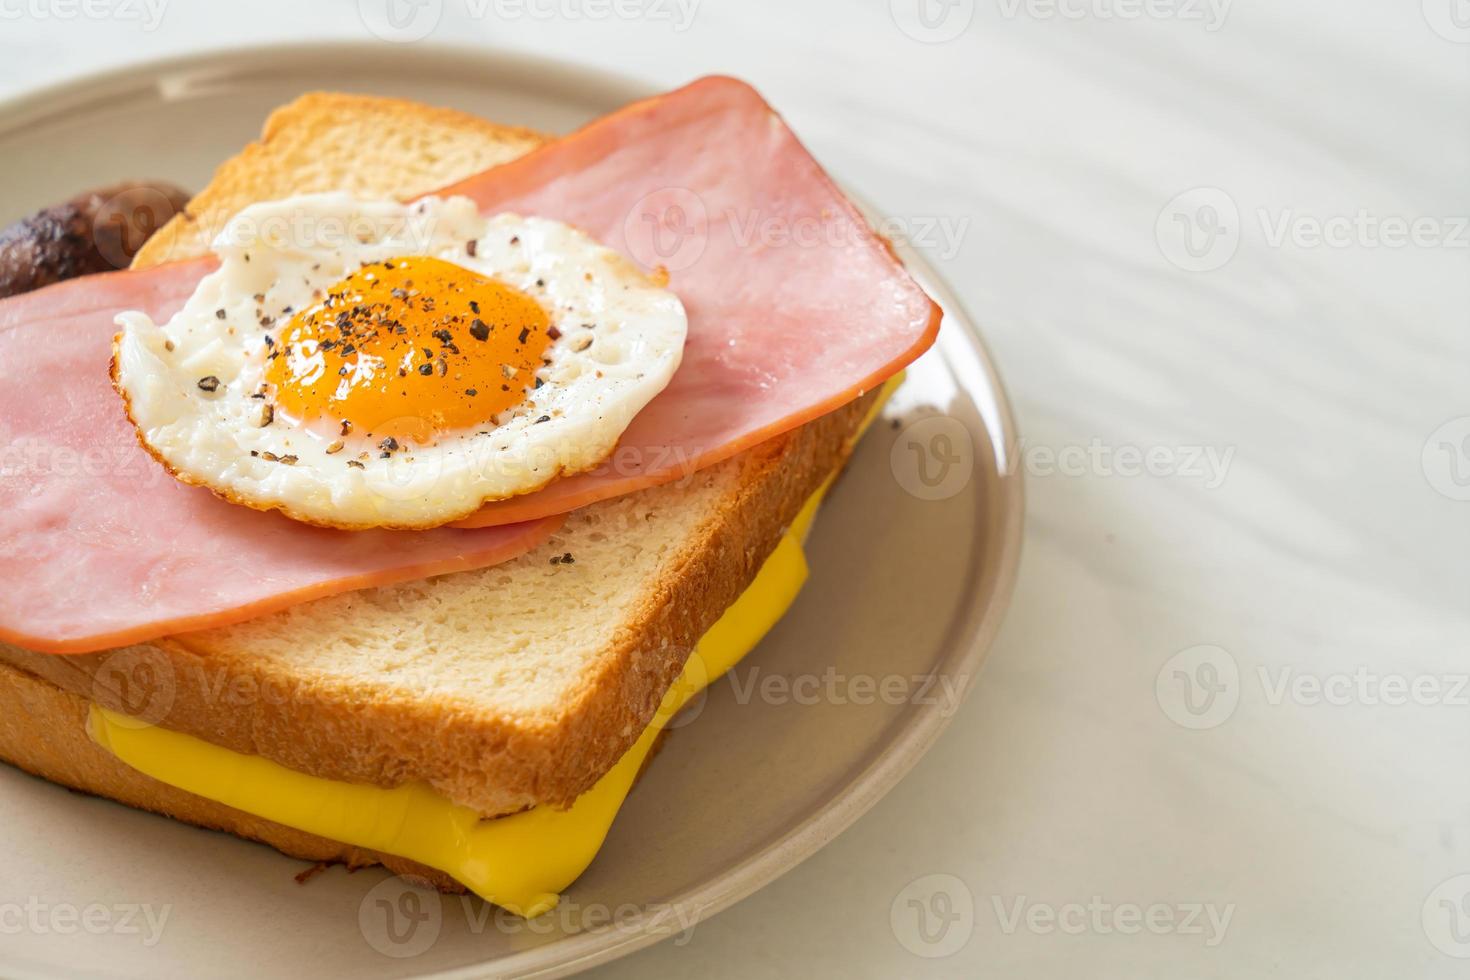 pão caseiro queijo torrado com presunto coberto e ovo frito com linguiça de porco no café da manhã foto